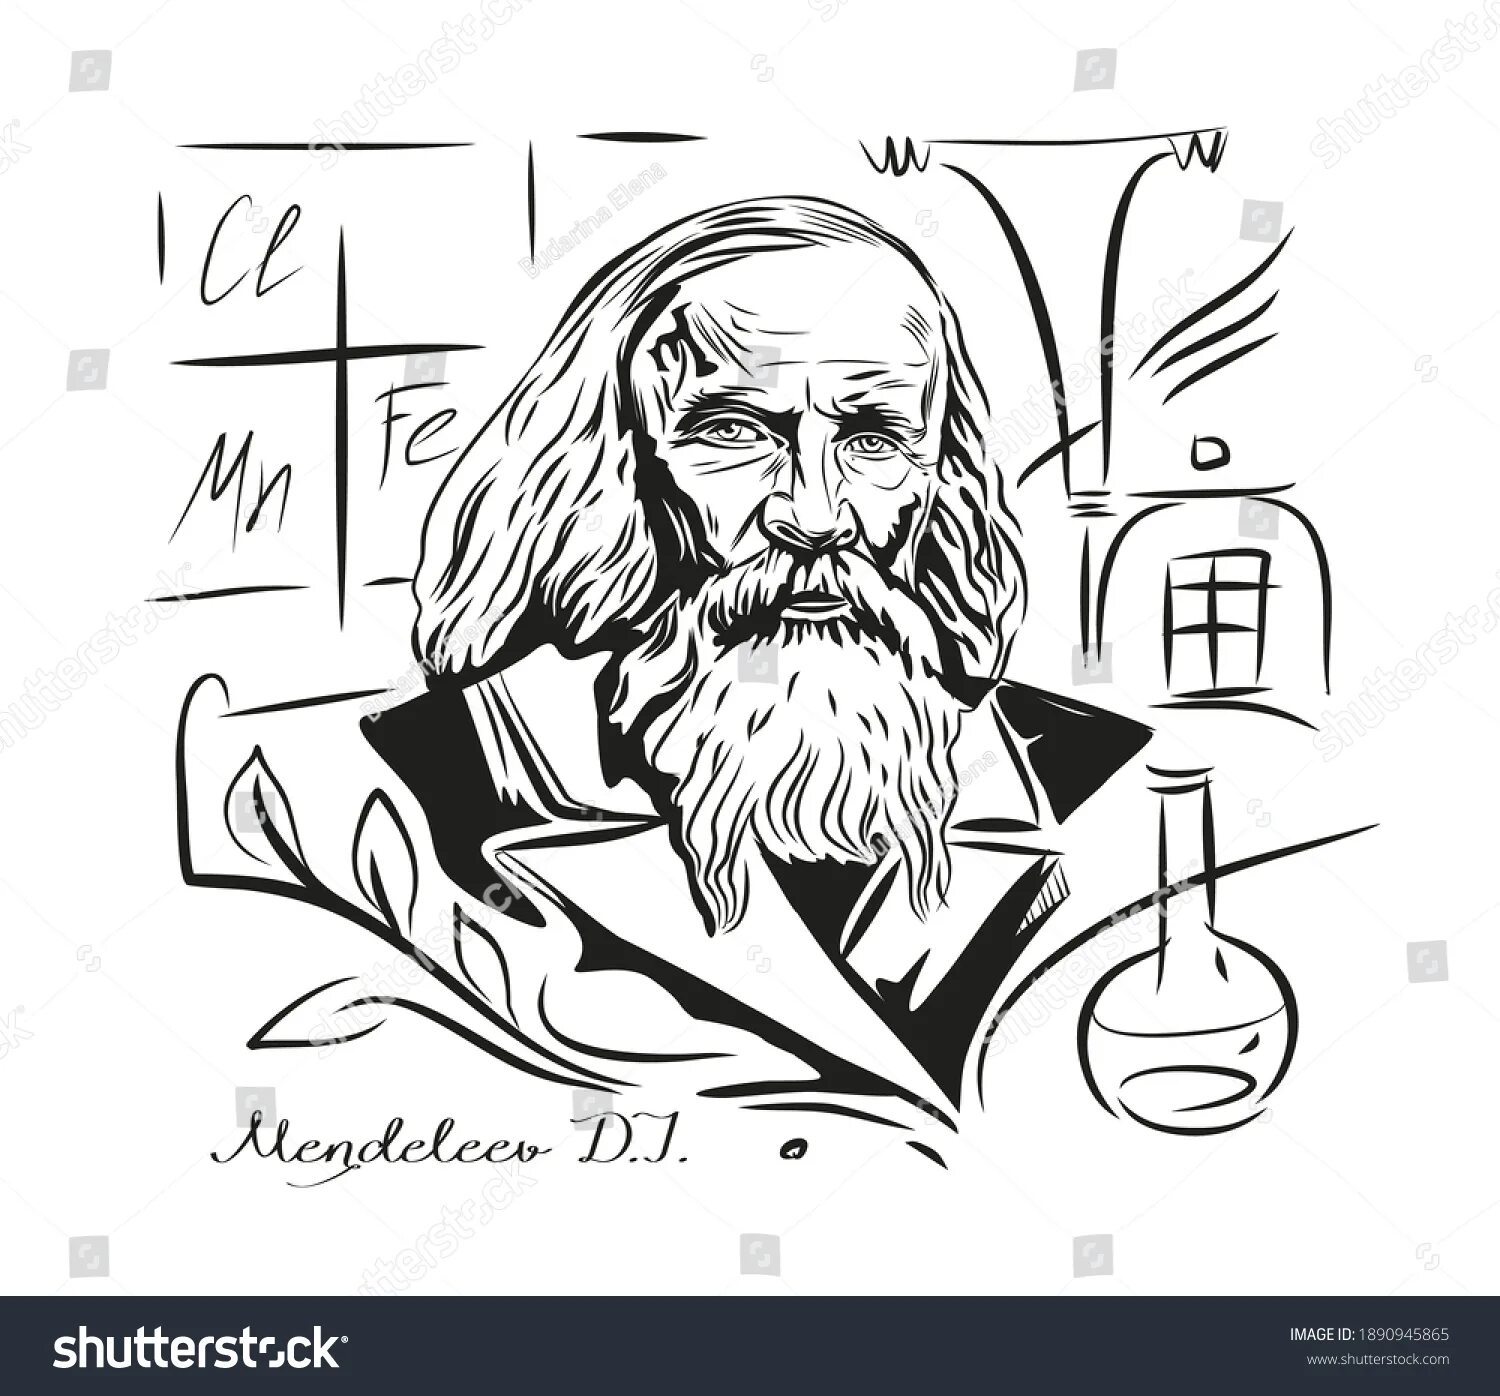 Mendeleev #2